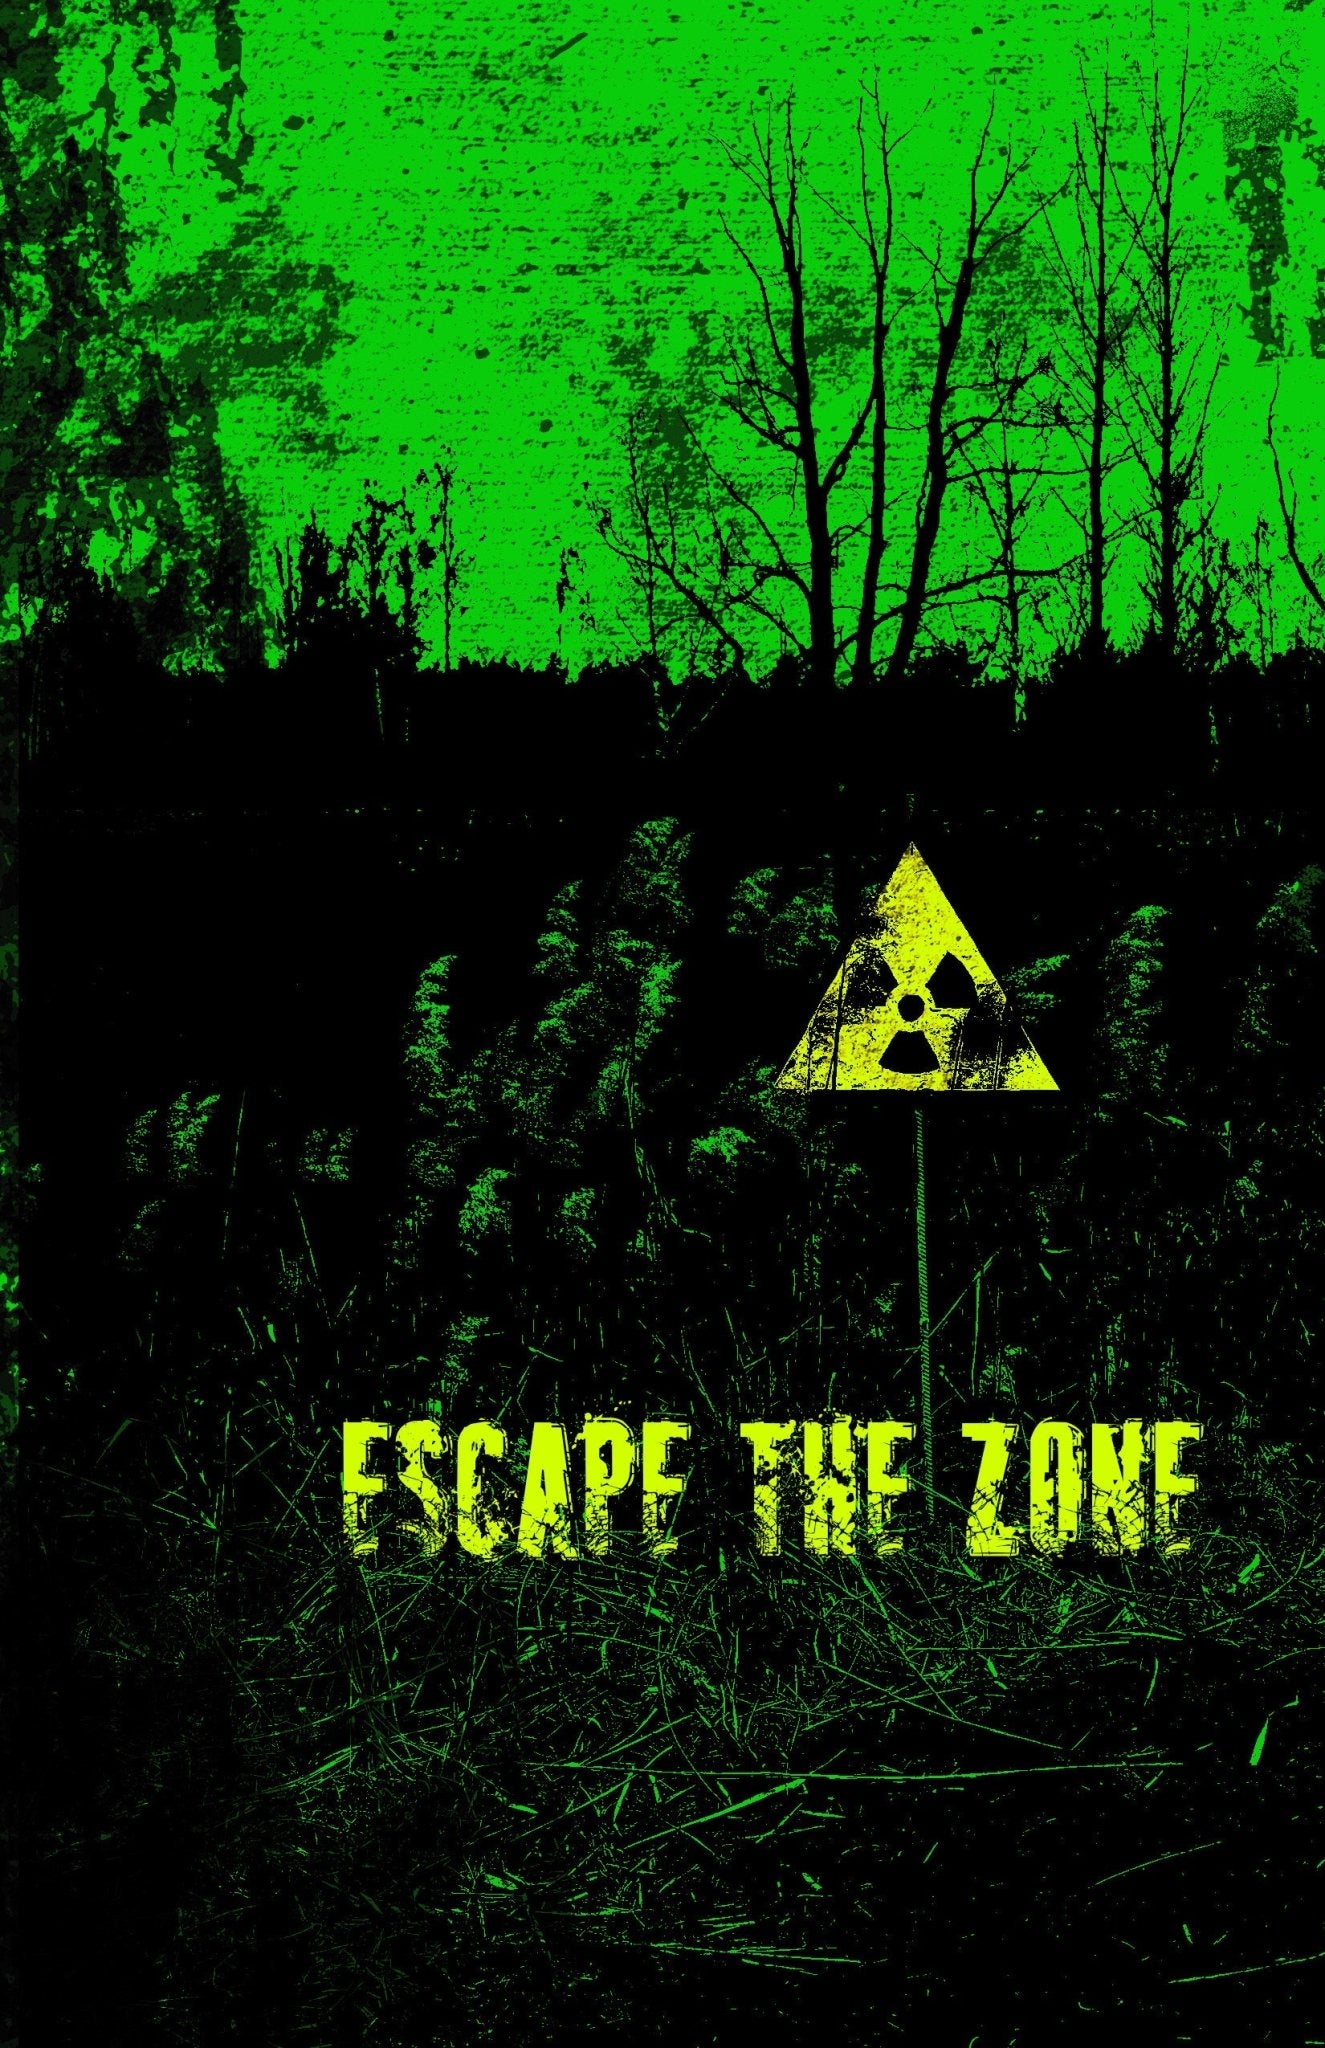 Escape the Zone + PDF